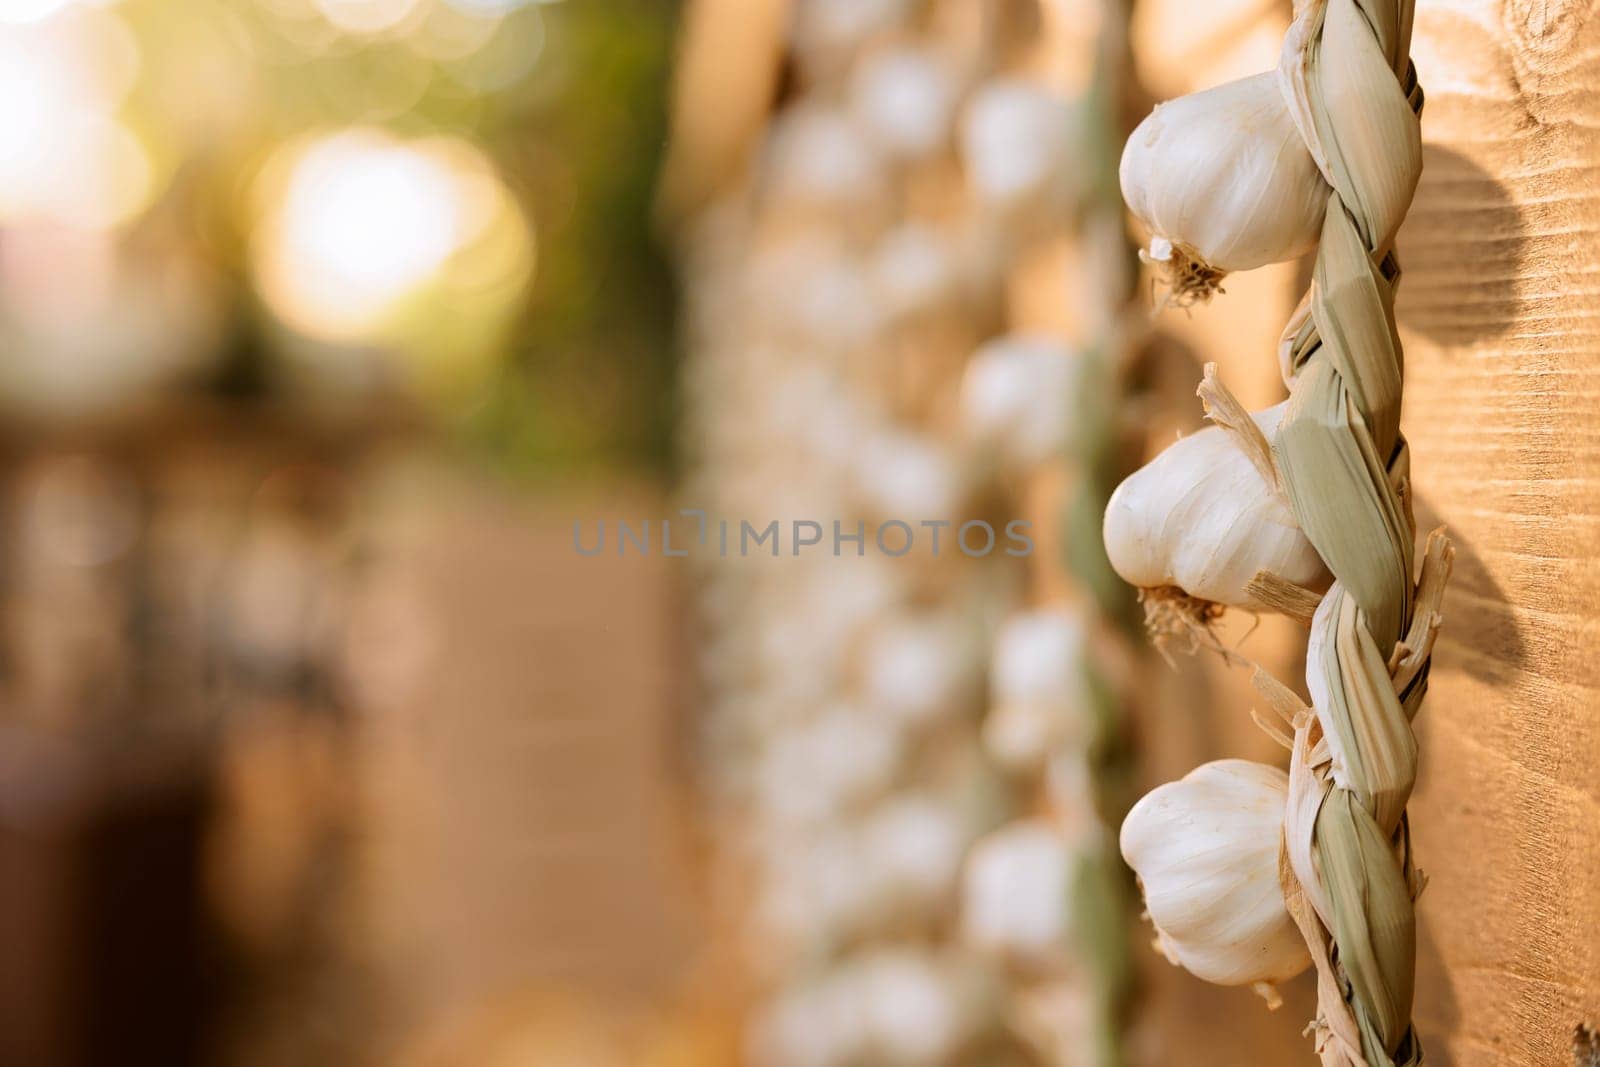 Organic garlic cloves at farm fair booth by DCStudio